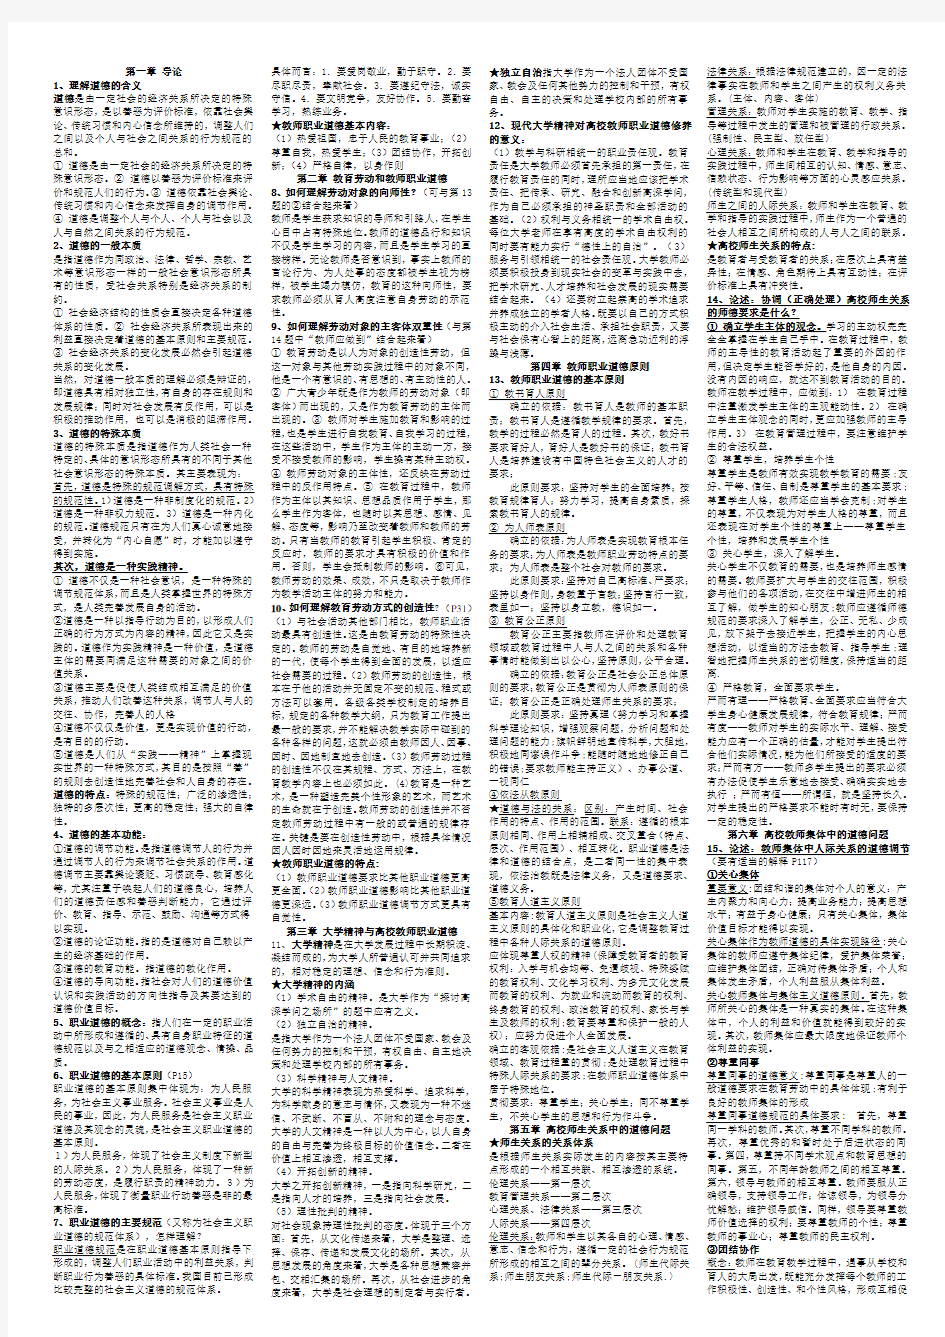 江苏省高校教师资格考试总结小抄版-职业道德